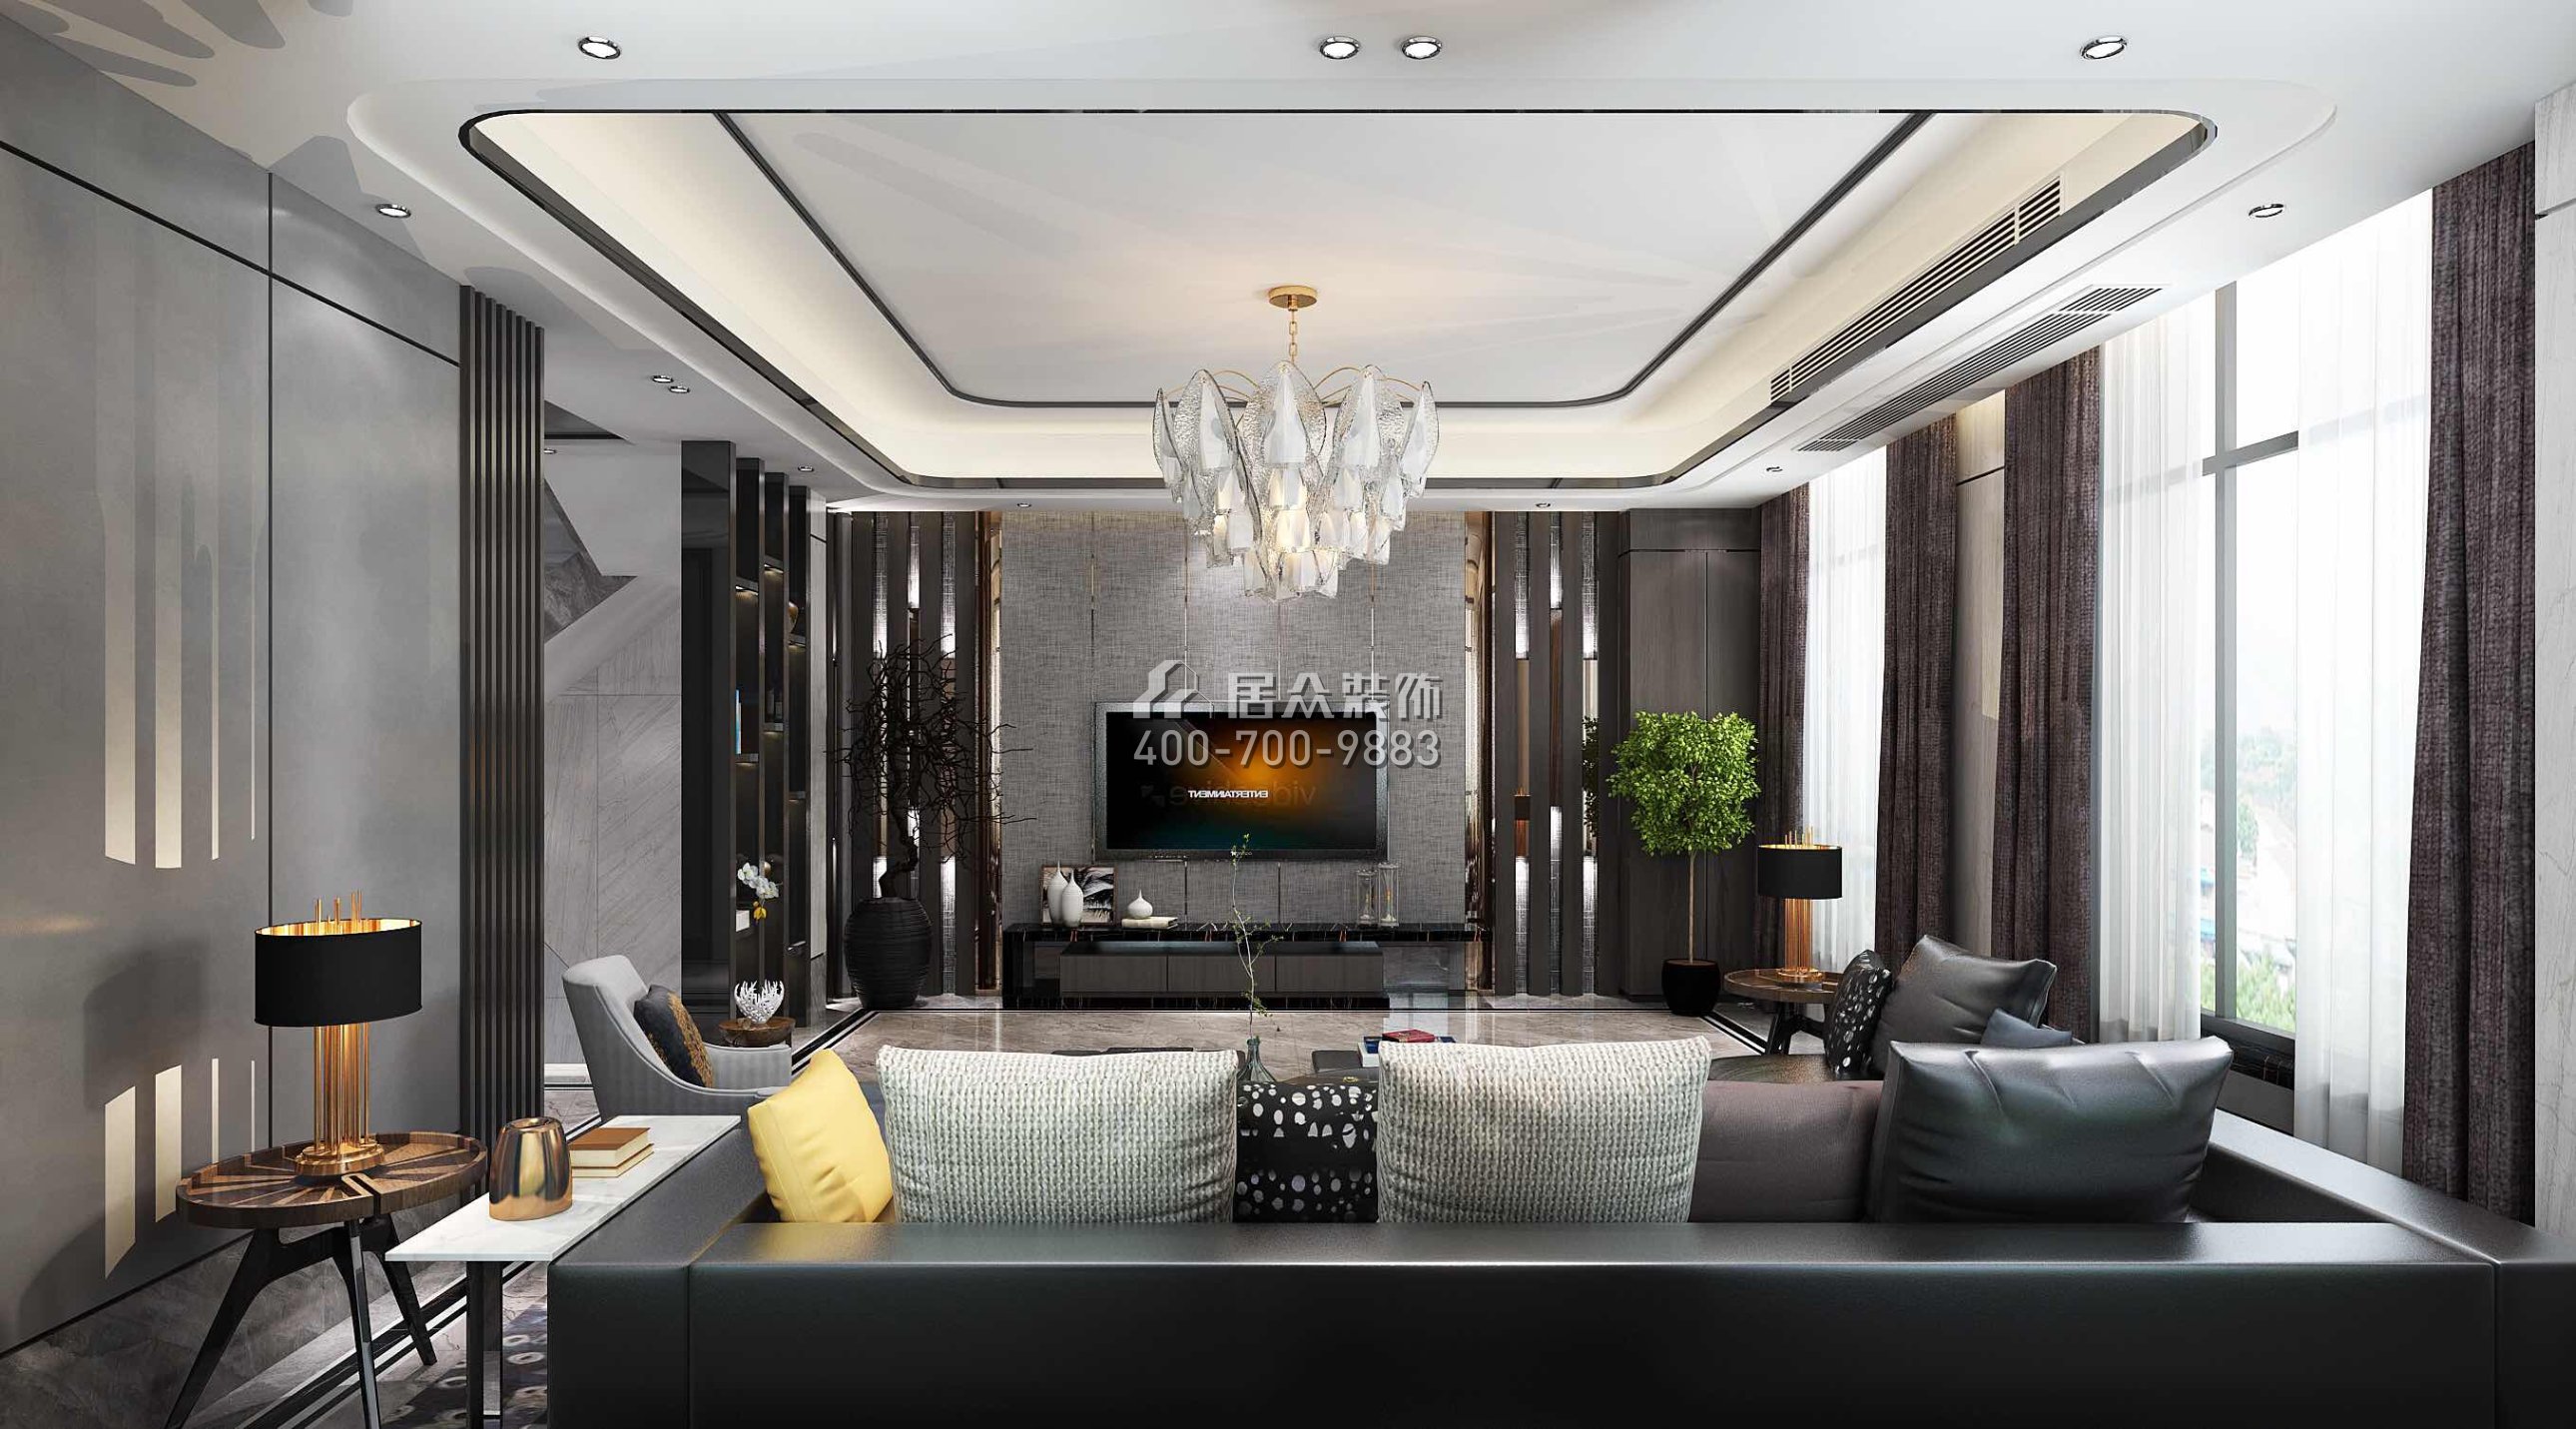 龍光水悅龍灣500平方米現代簡約風格別墅戶型客廳裝修效果圖